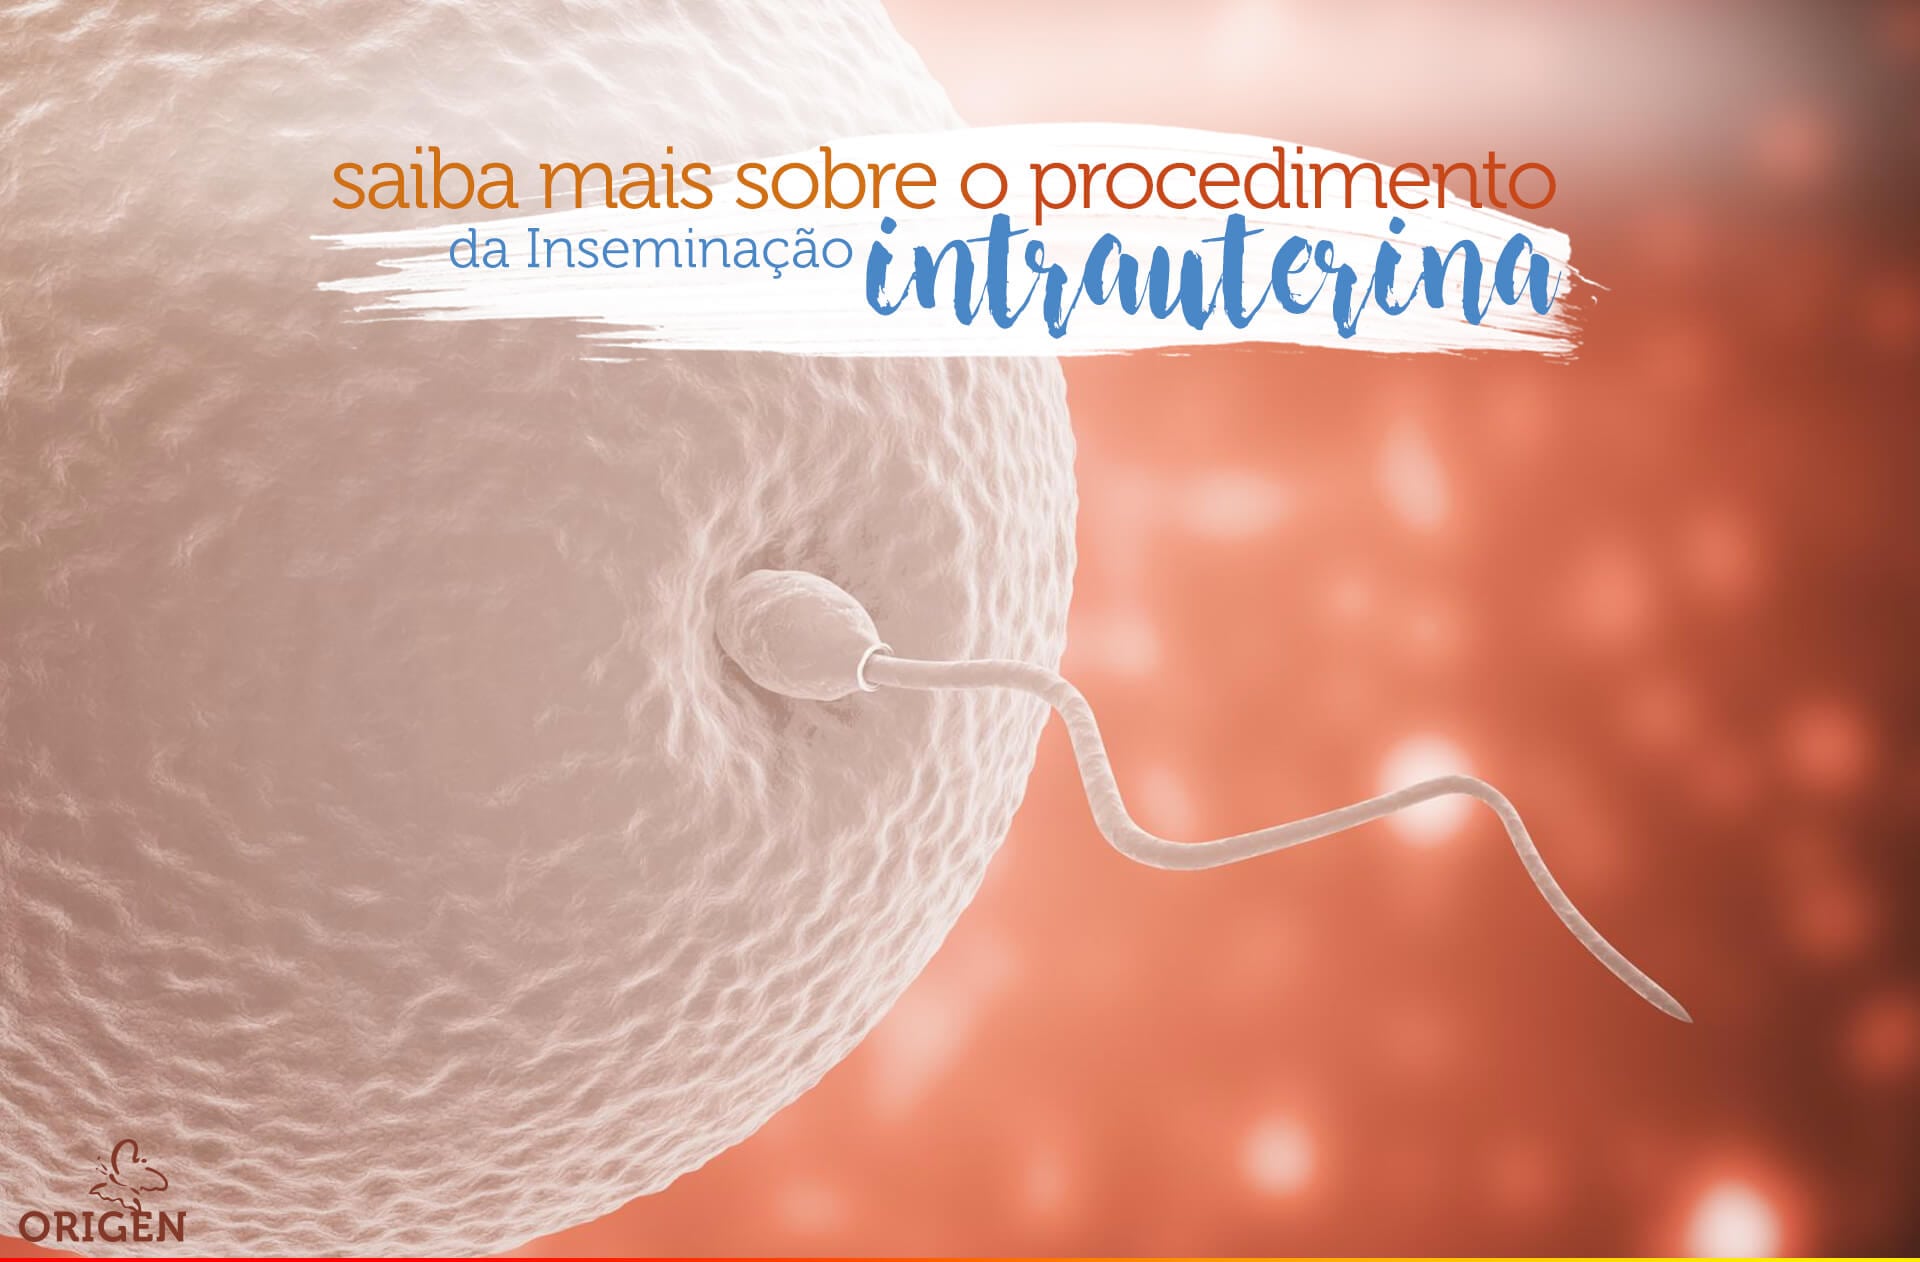 Inseminação intrauterina (IIU): saiba mais sobre o procedimento